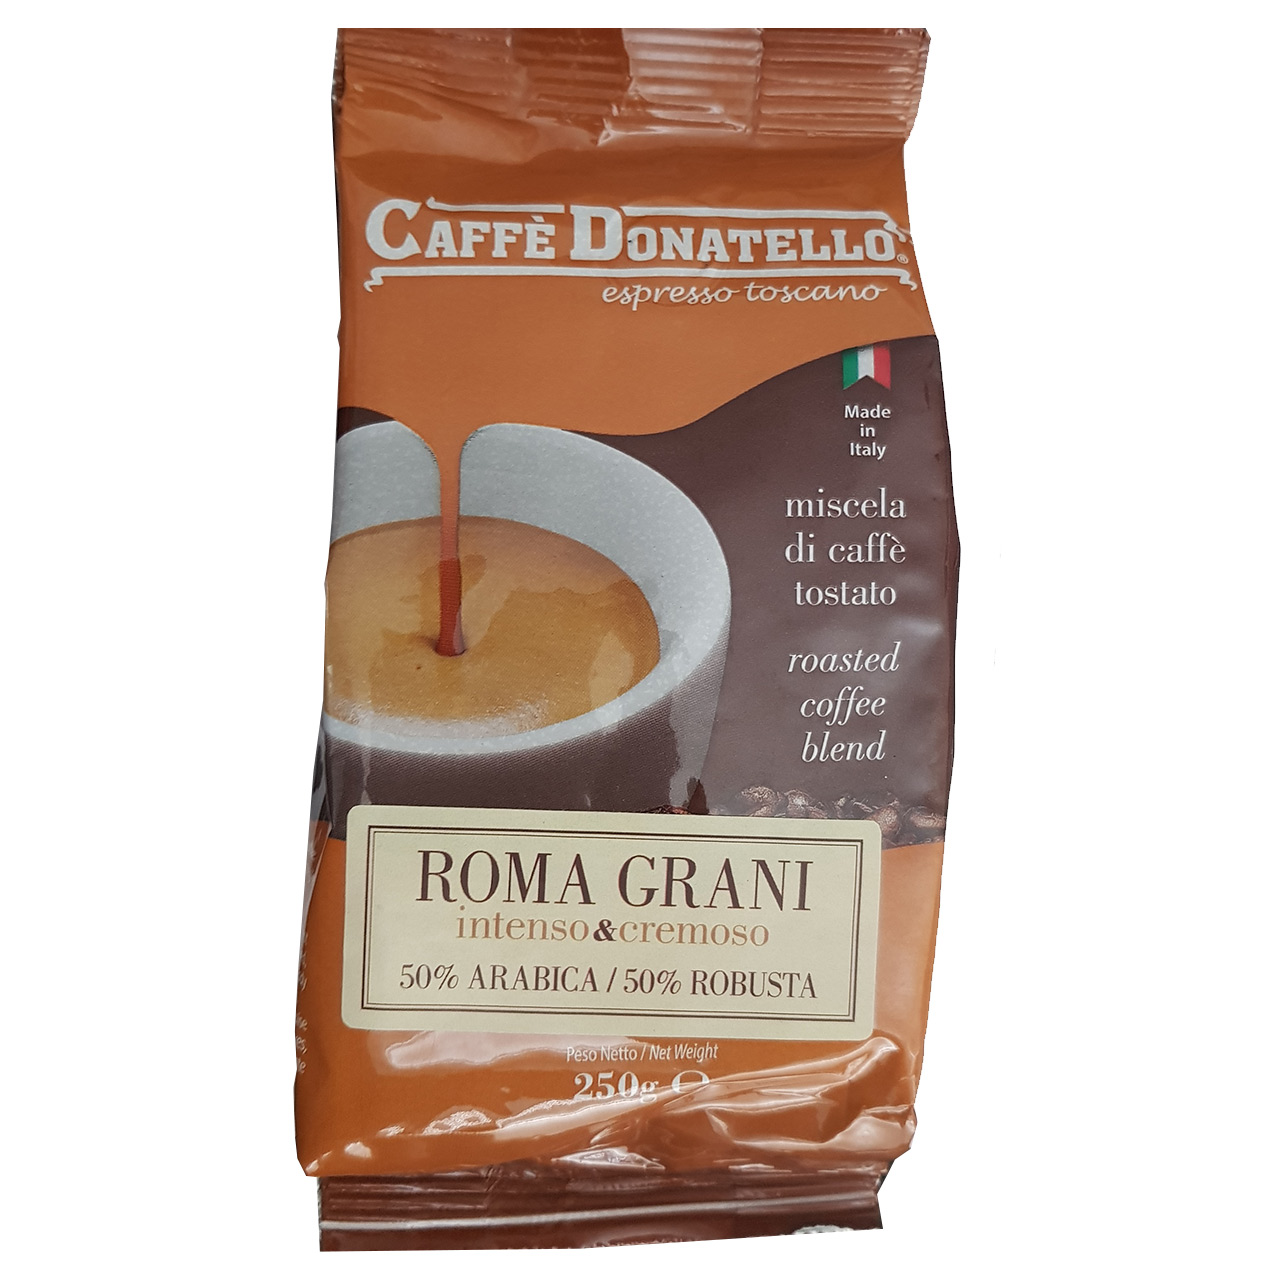 دانه قهوه کافه دوناتلو مدل روما گرانی مقدار 250 گرم